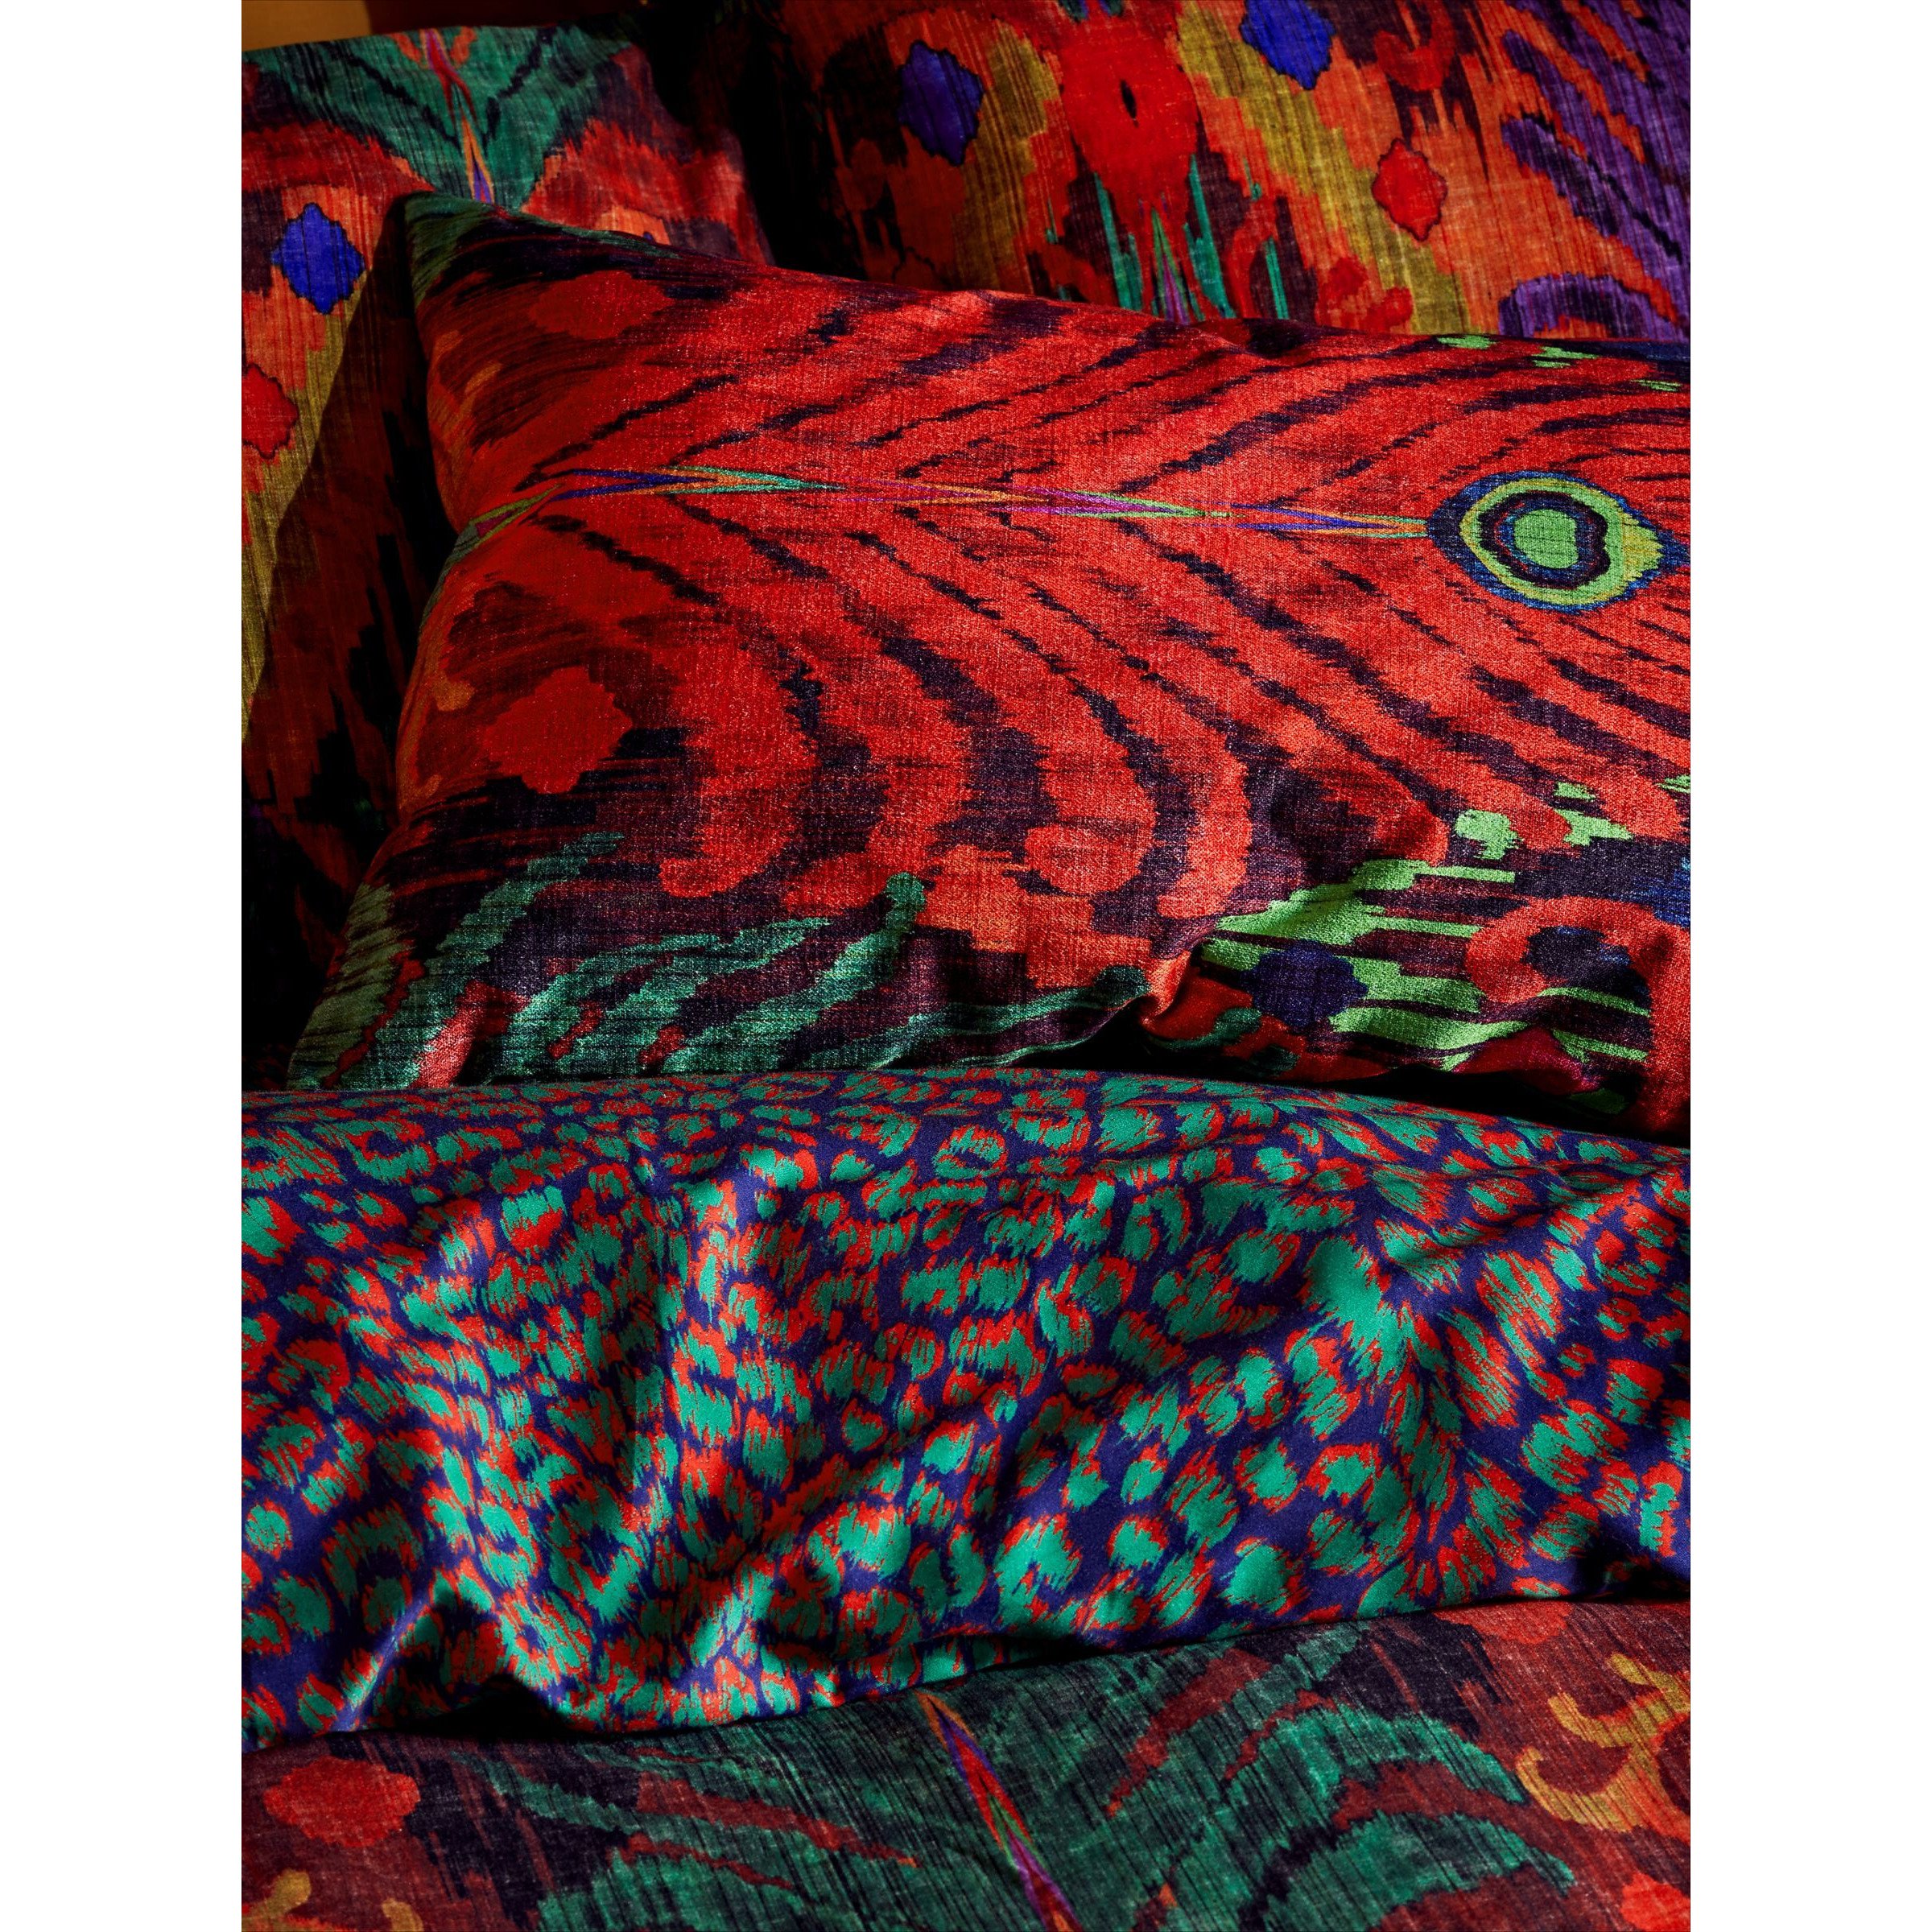 John Lewis + Matthew Williamson Peacock Ikat Cushion - image 1